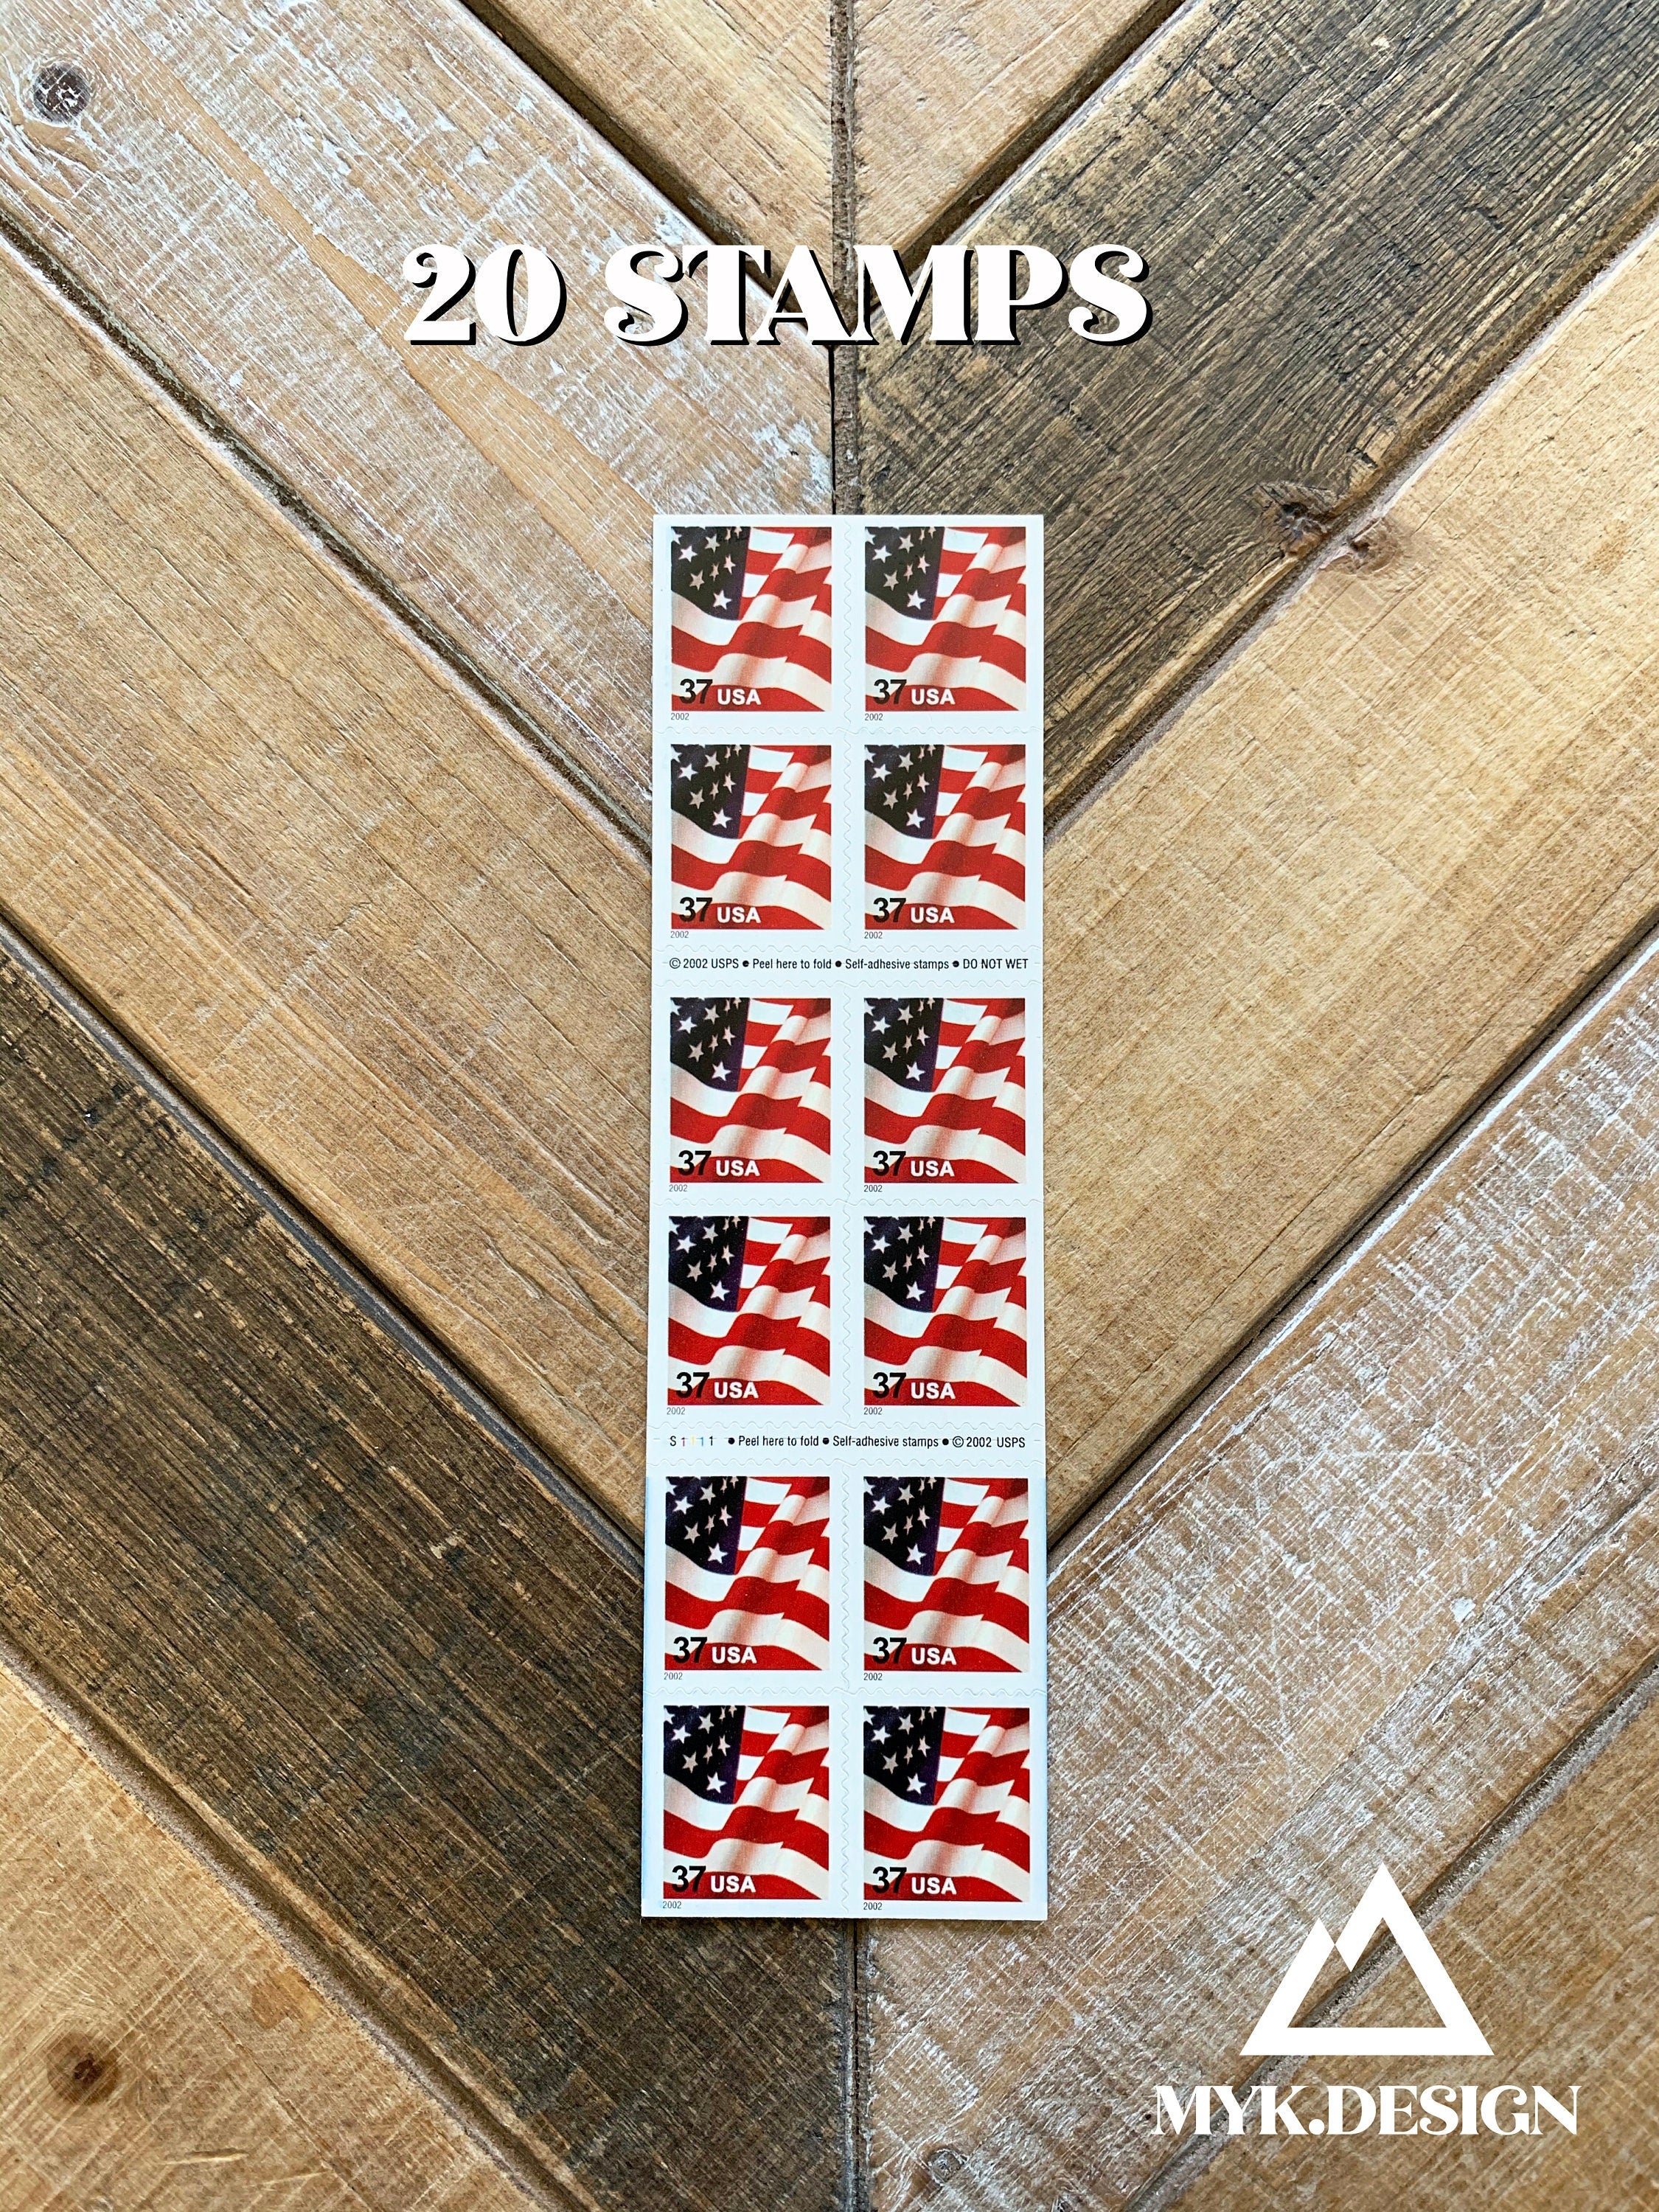 MNH 2003 Louisiana Purchase Single 37 Cent Stamp – US SCOTT #3782